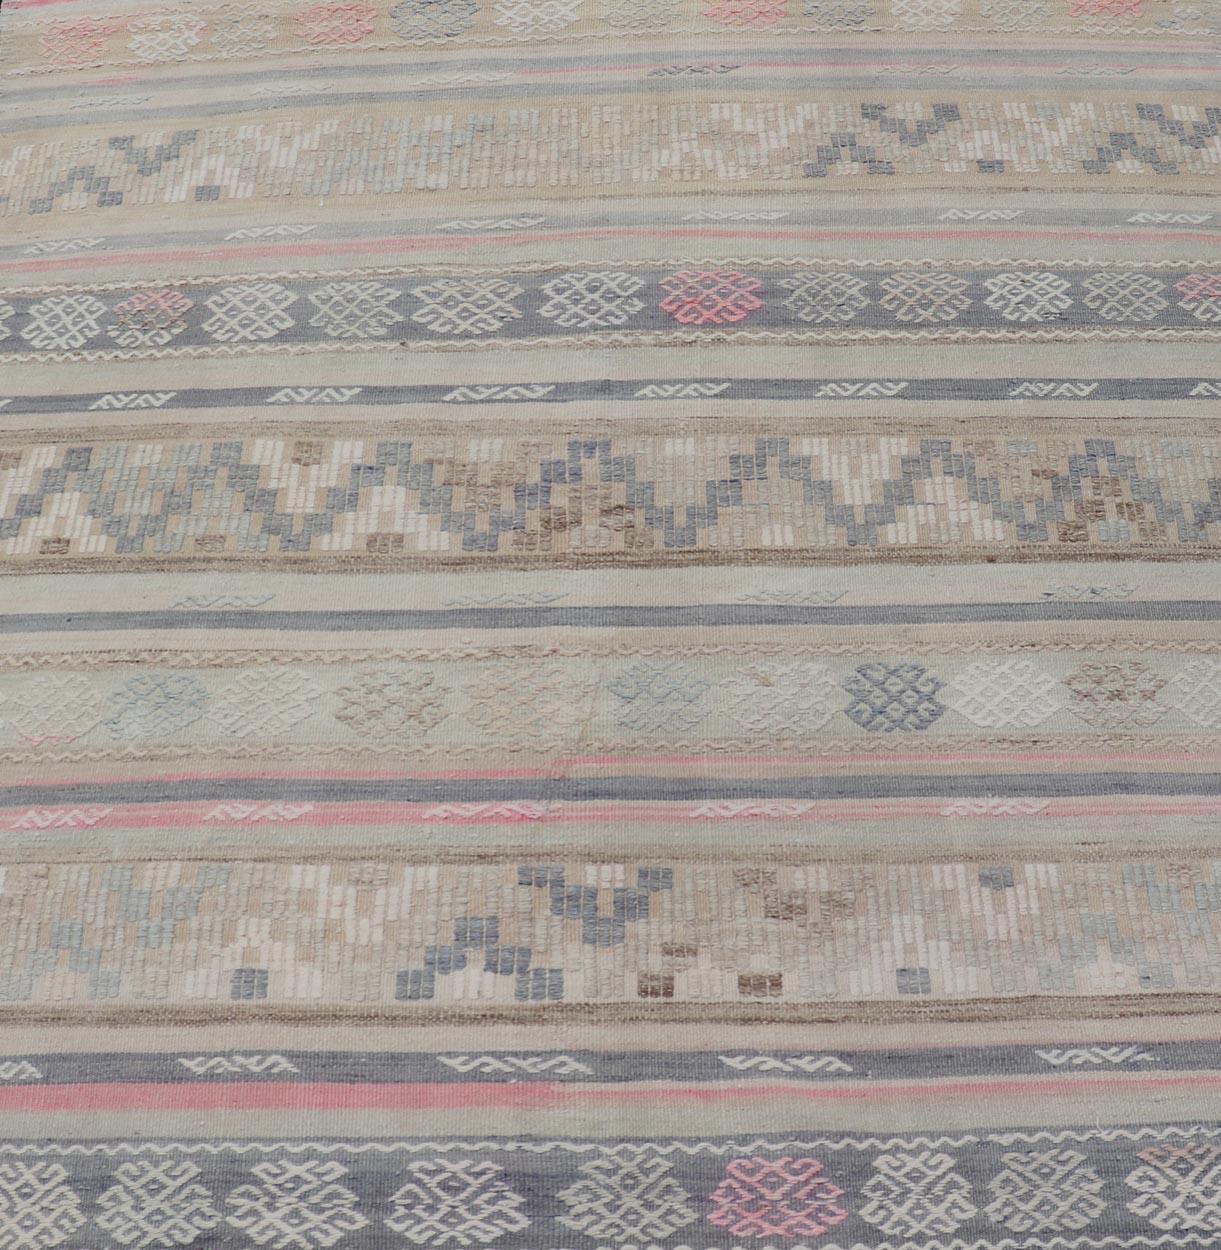  Rayures et broderies Kilim turc à tissage plat dans diverses couleurs sourdes. Keivan Woven Arts / tapis EN-15178, pays d'origine / type : Turquie / Kilim, circa 1950

Mesures : 5'4 x 5'10 

Ce tapis Rug & Kilim de Turquie présente un design rayé